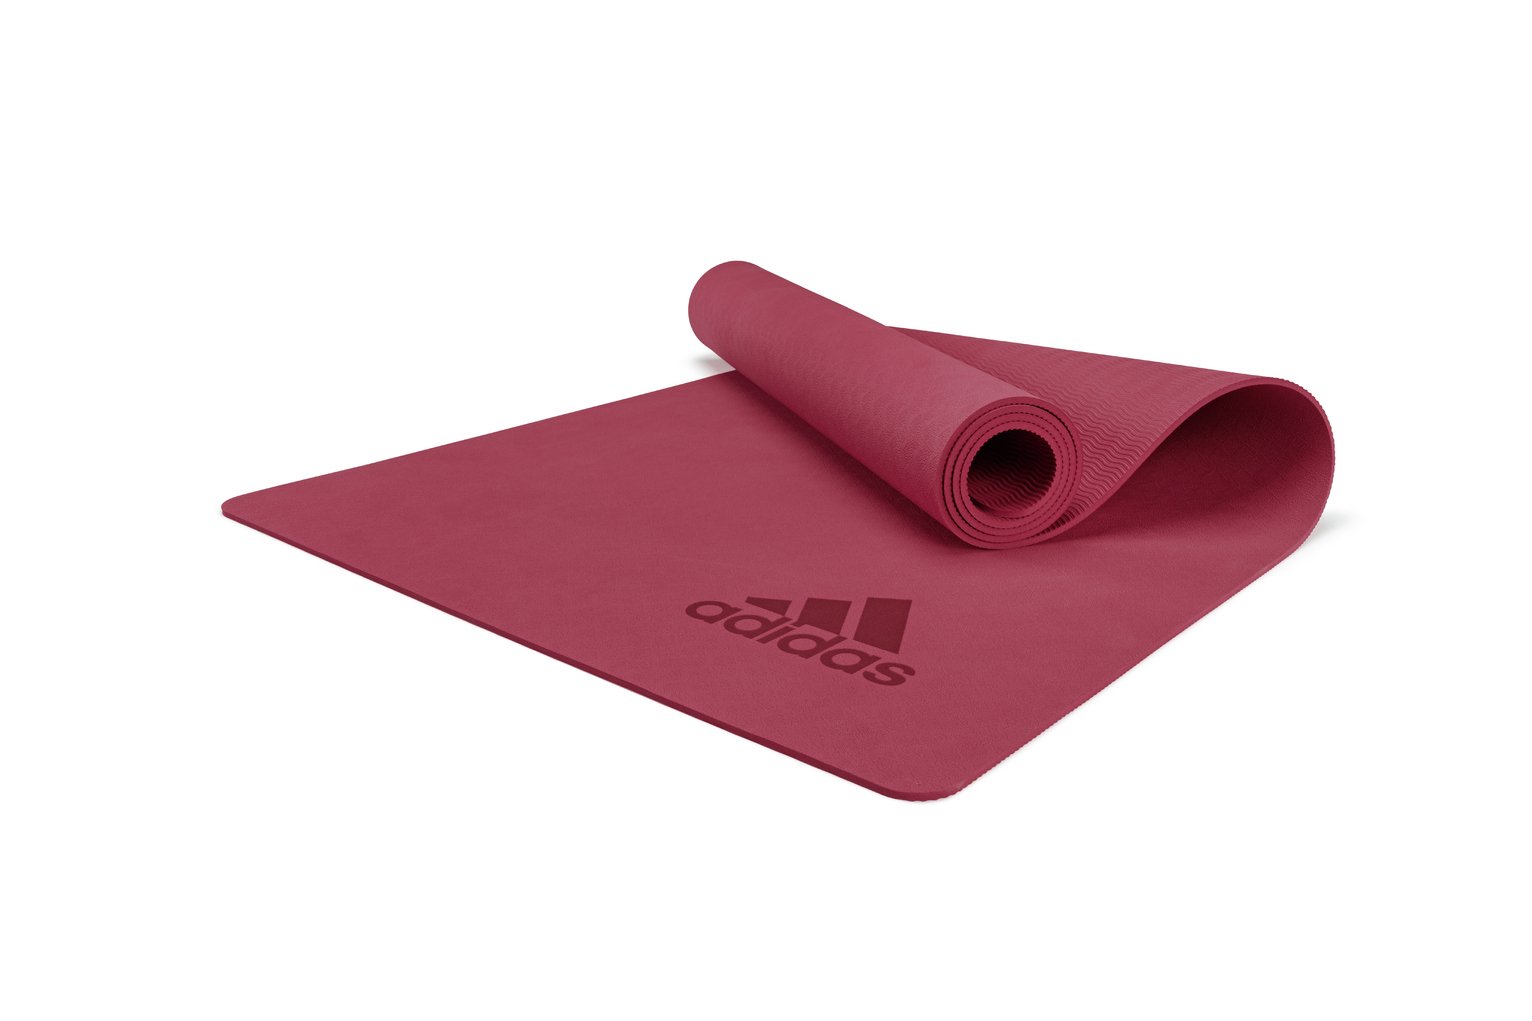 Adidas Premium Yoga Mat Review